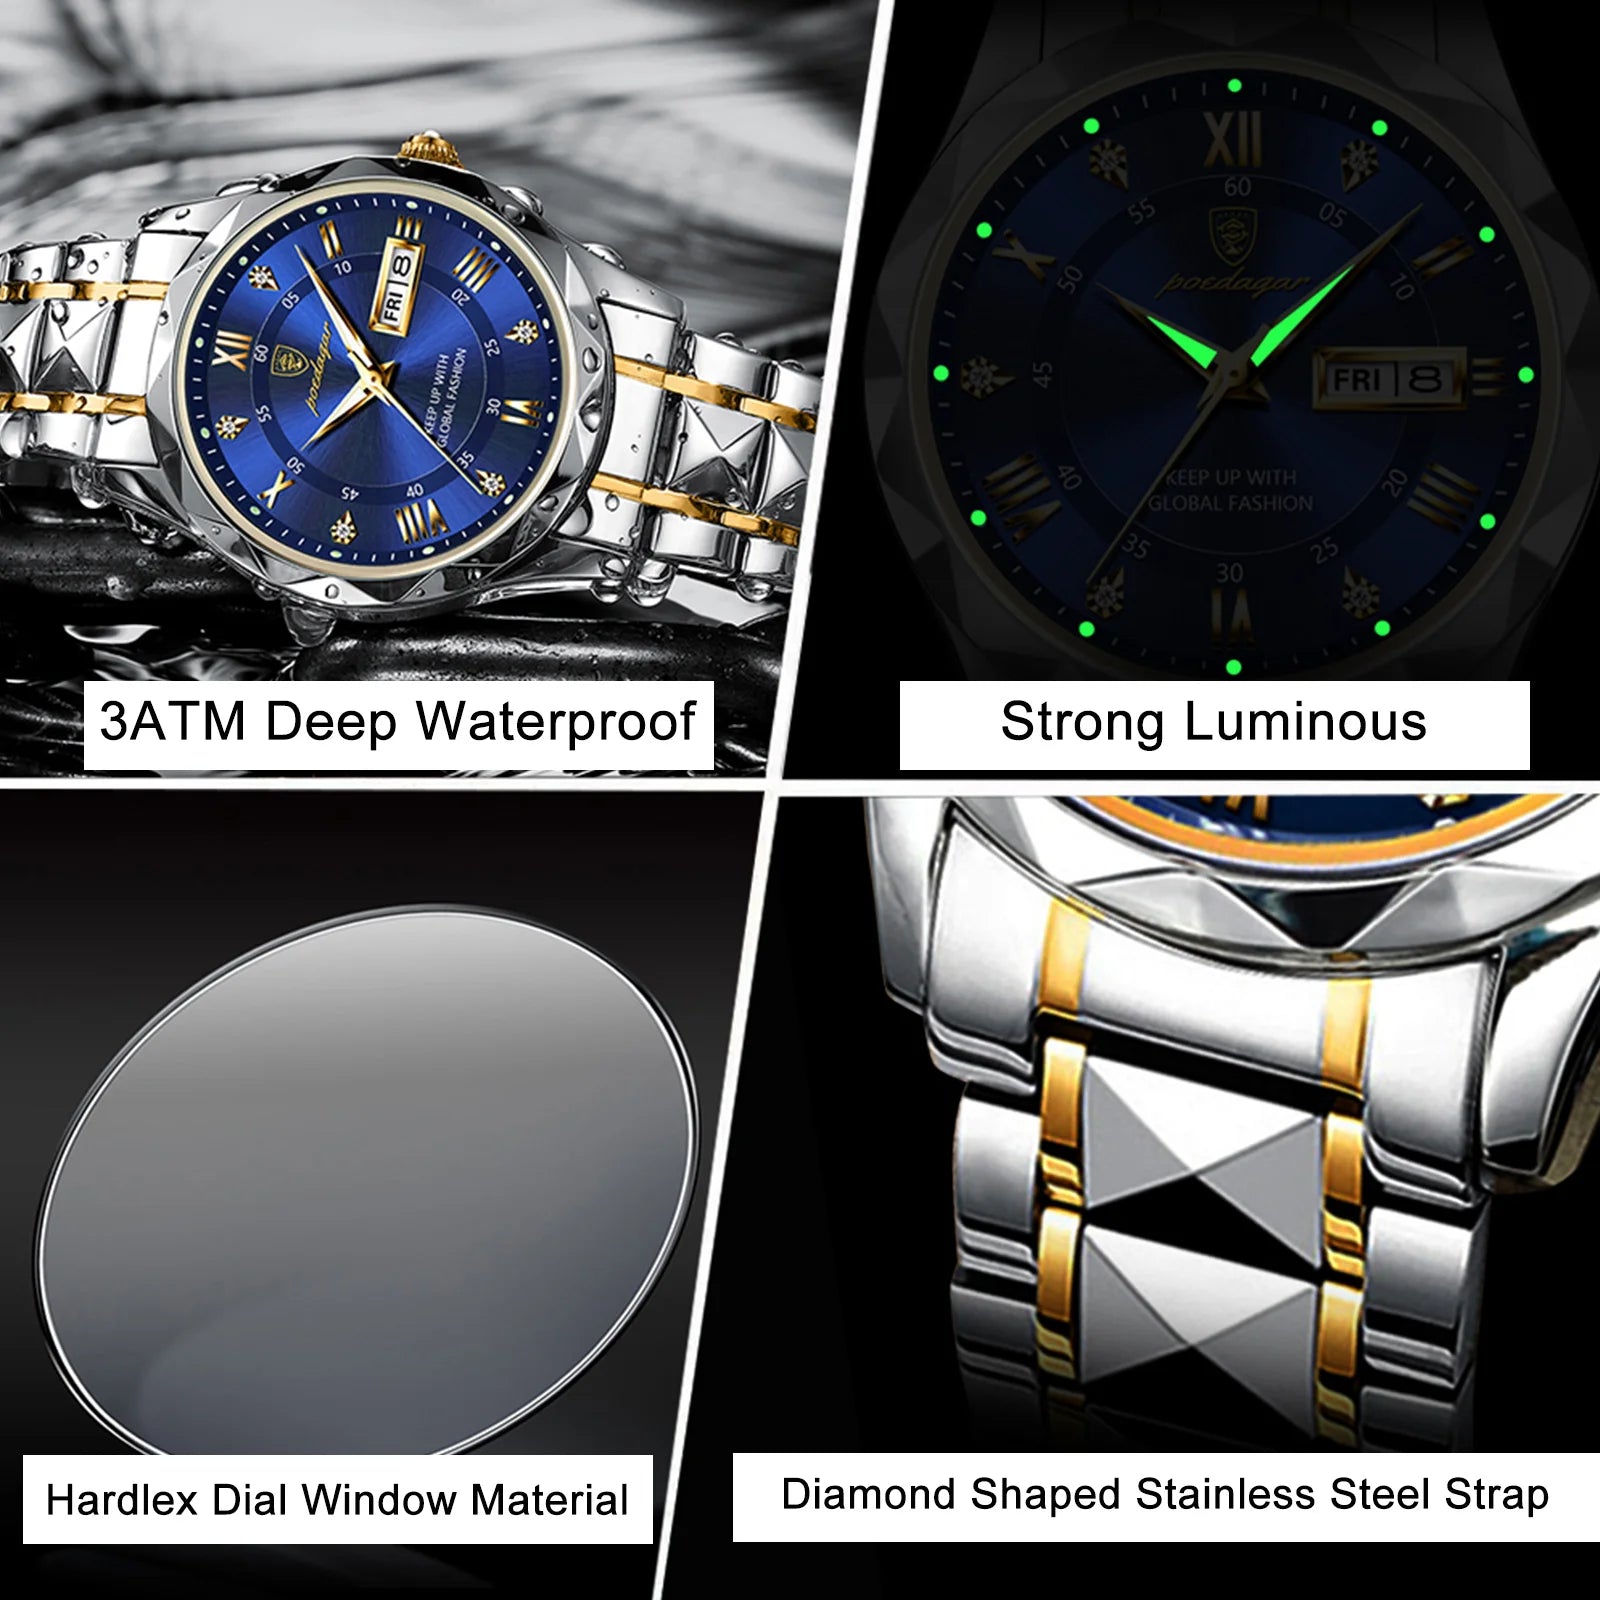 POEDAGAR Top Brand Luxury Man Round Waterproof Wristwatch